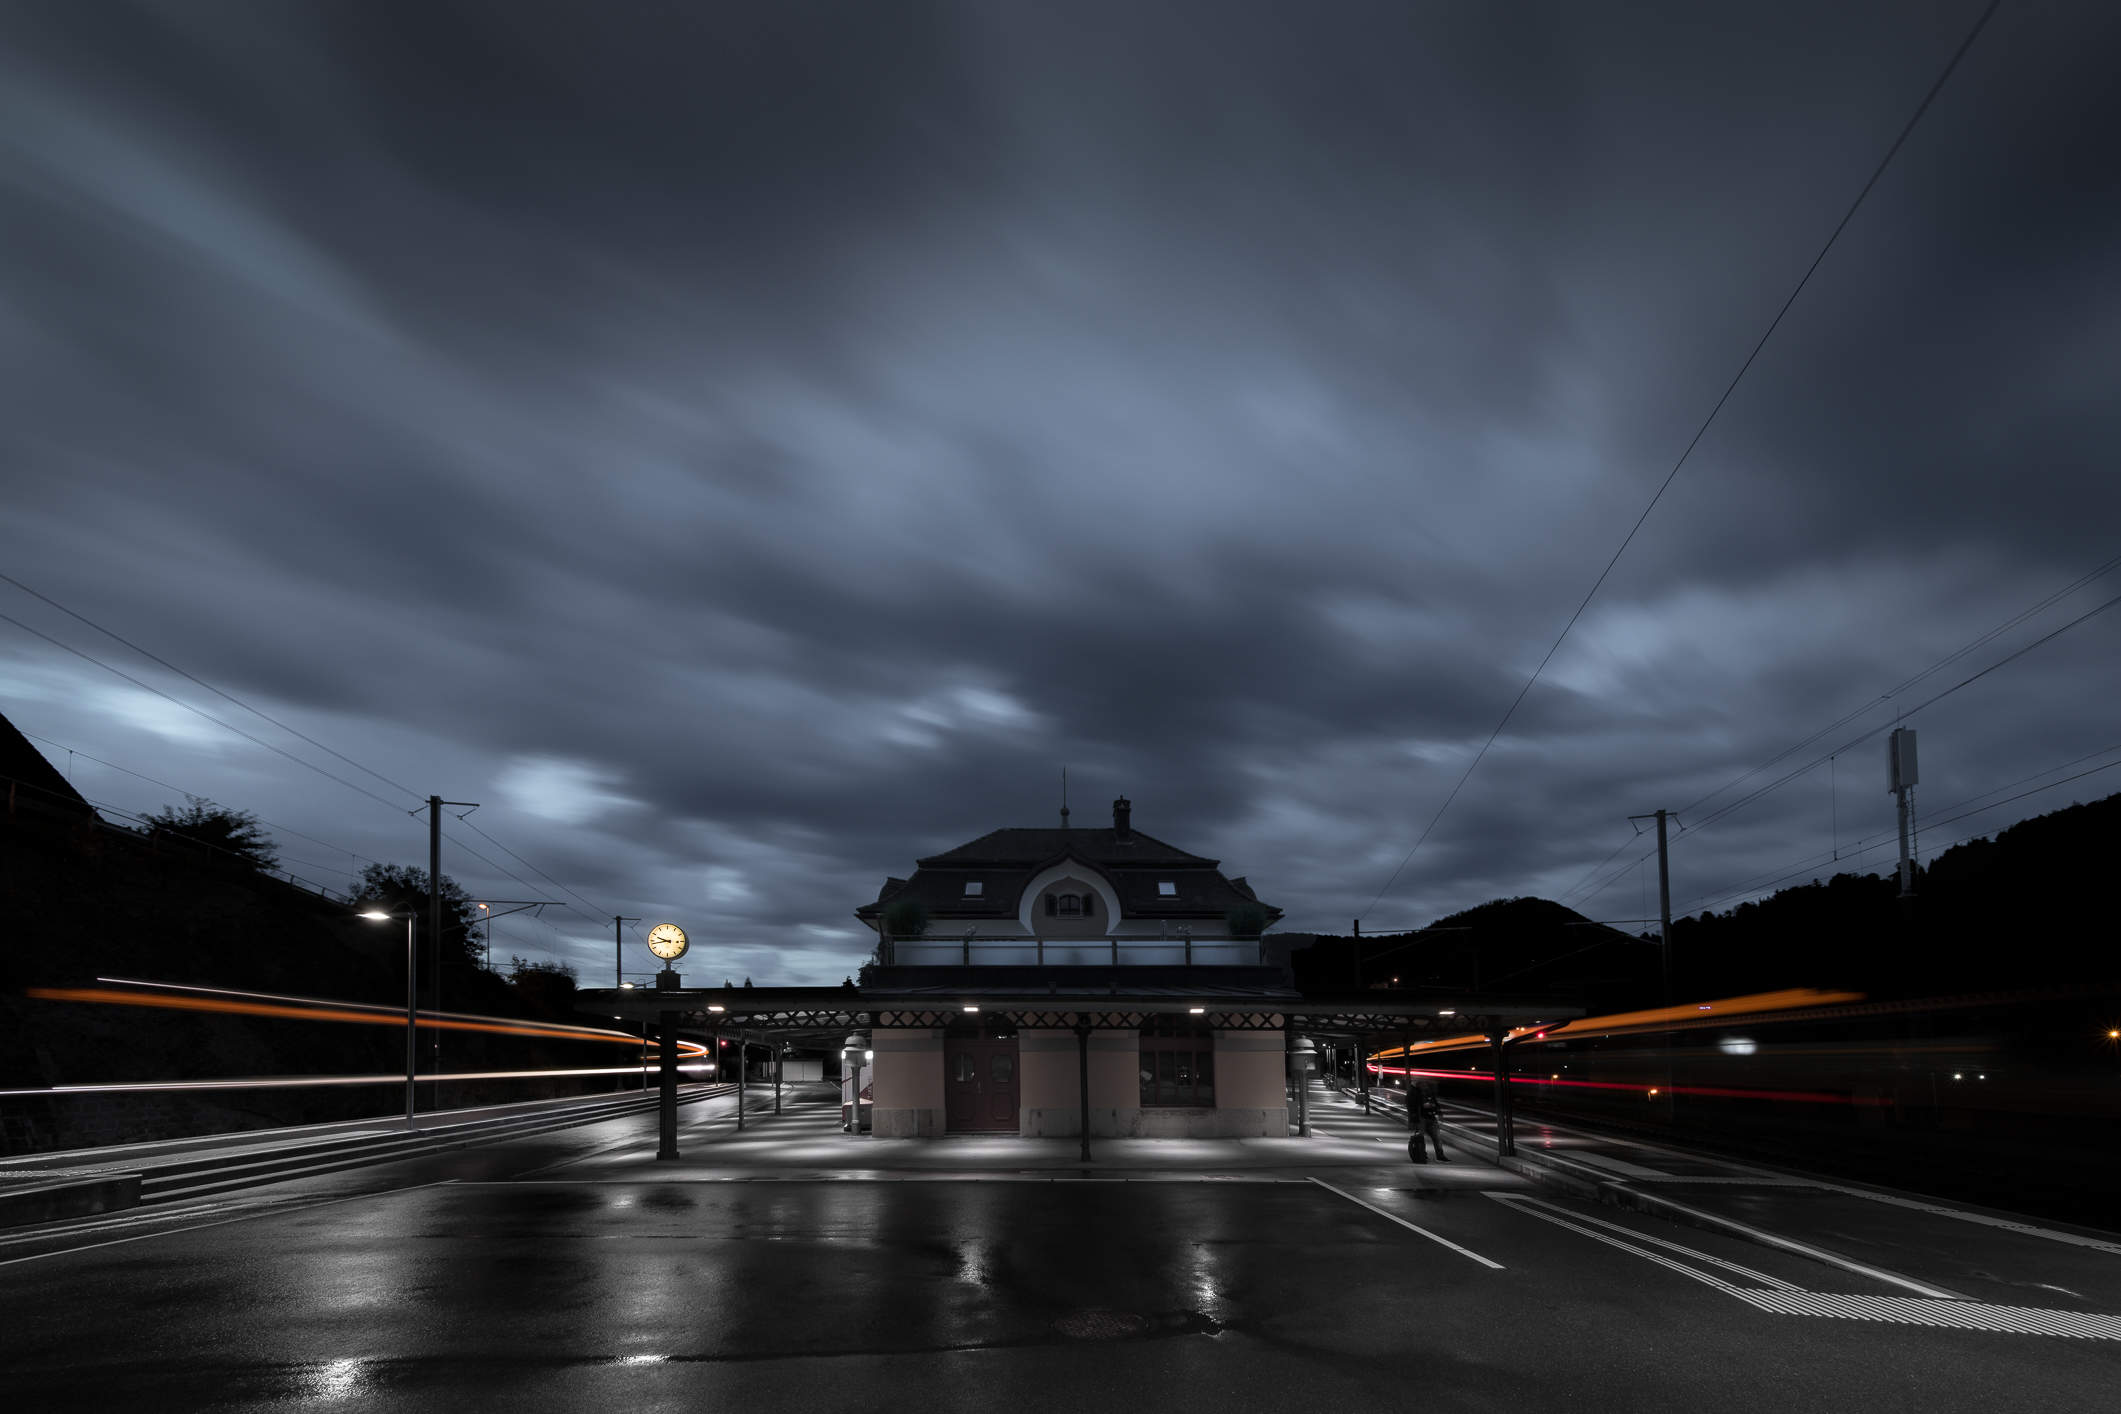 Historischer Bahnhof Lichtensteig nach einem heftigen Gewitter - Langzeitbelichtung